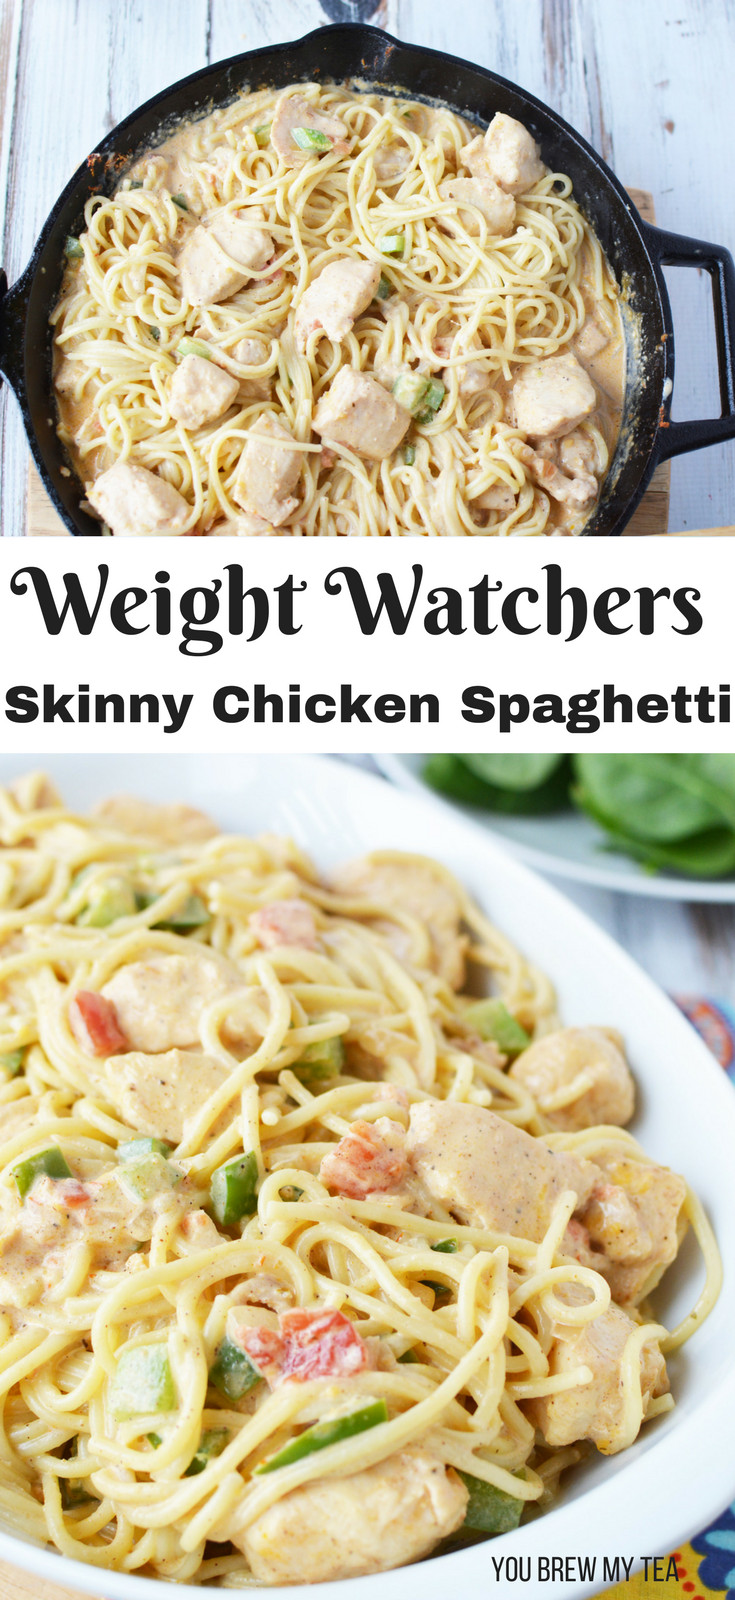 Weight Watcher Chicken Spaghetti
 Skinny Chicken Spaghetti Recipe You Brew My Tea